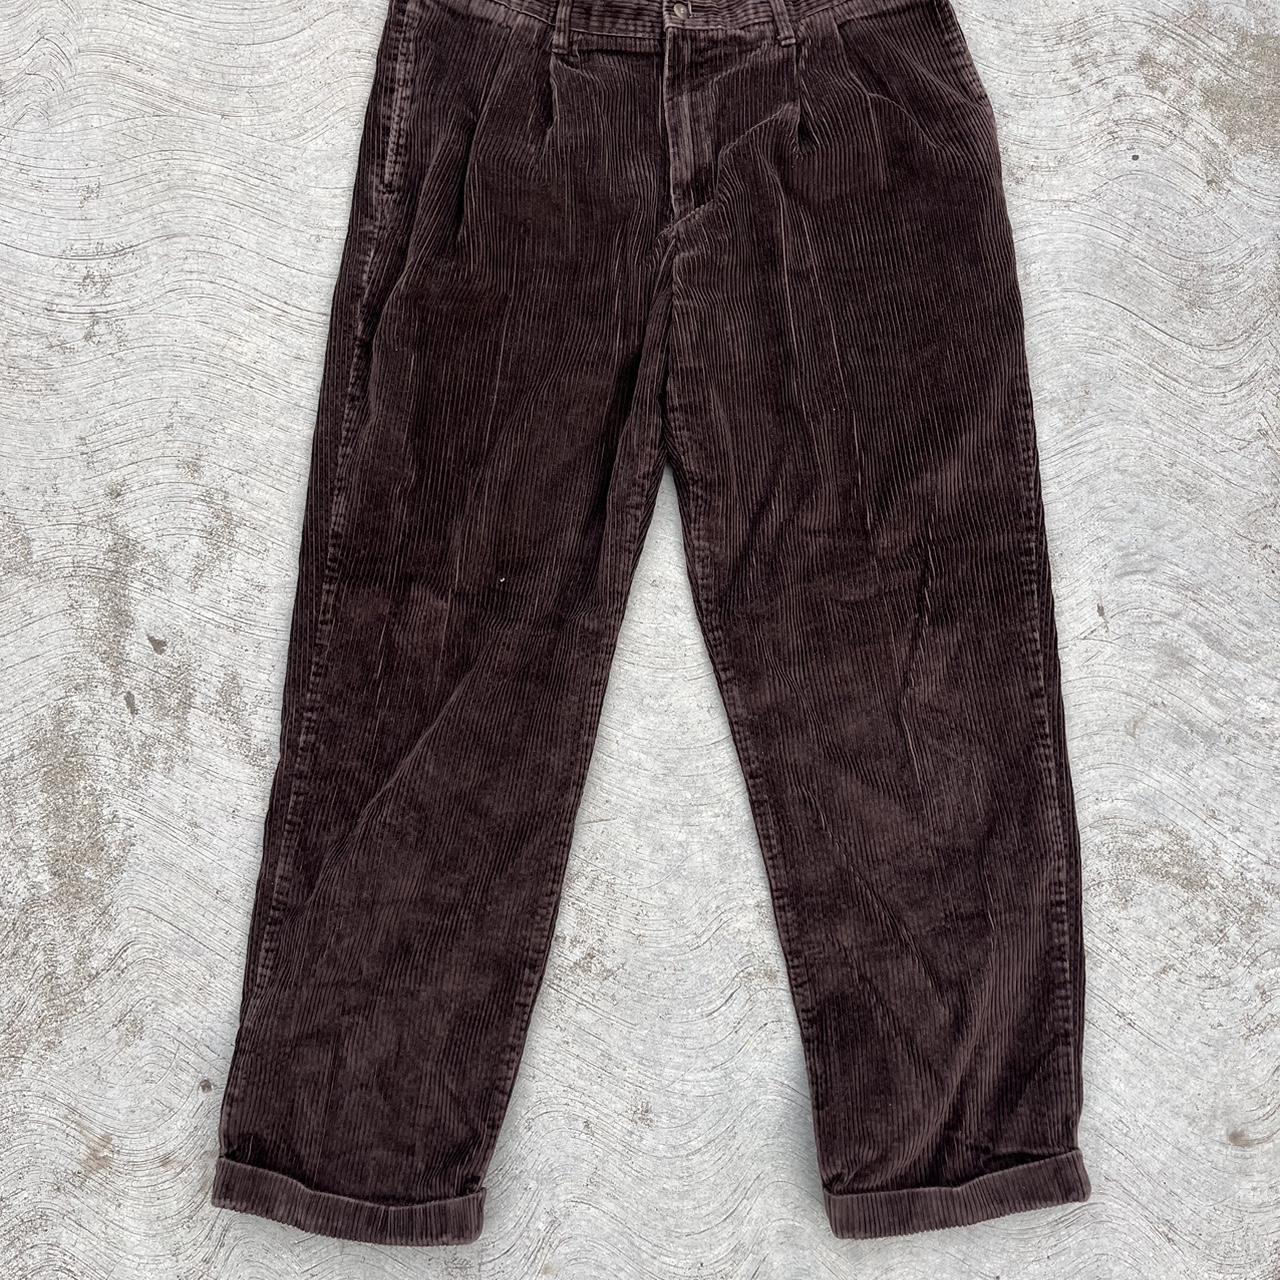 Vintage Y2K Brown dockers baggy pants Preowned... - Depop